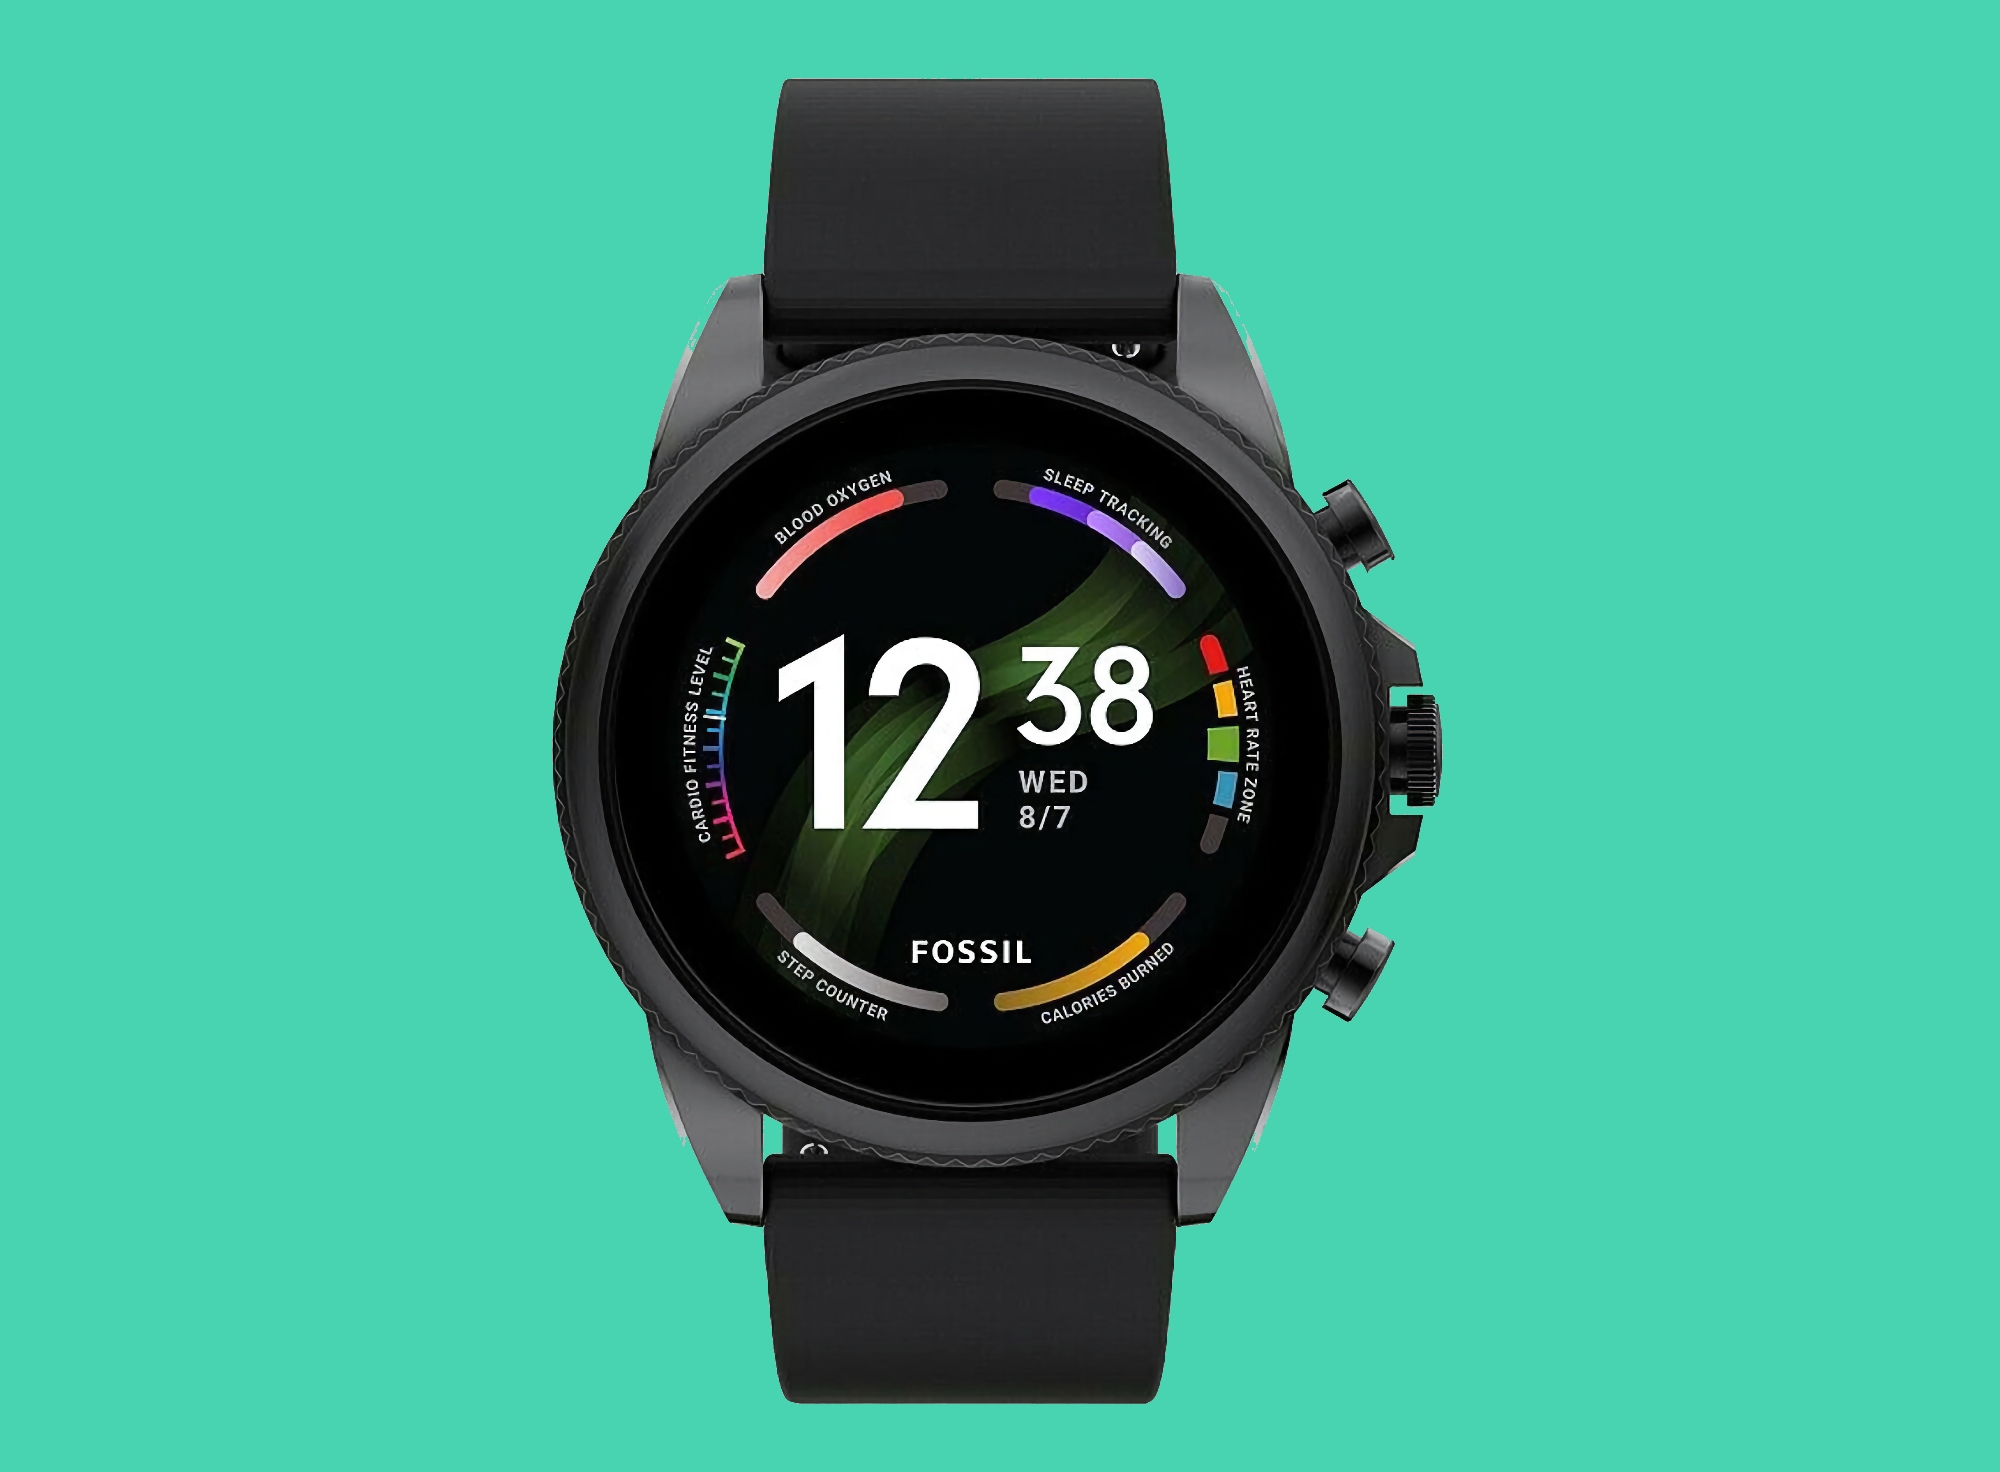 Fossil Gen 6 en Amazon: smartwatch con caja de 44 mm, NFC y Wear OS a bordo por 151 dólares de descuento